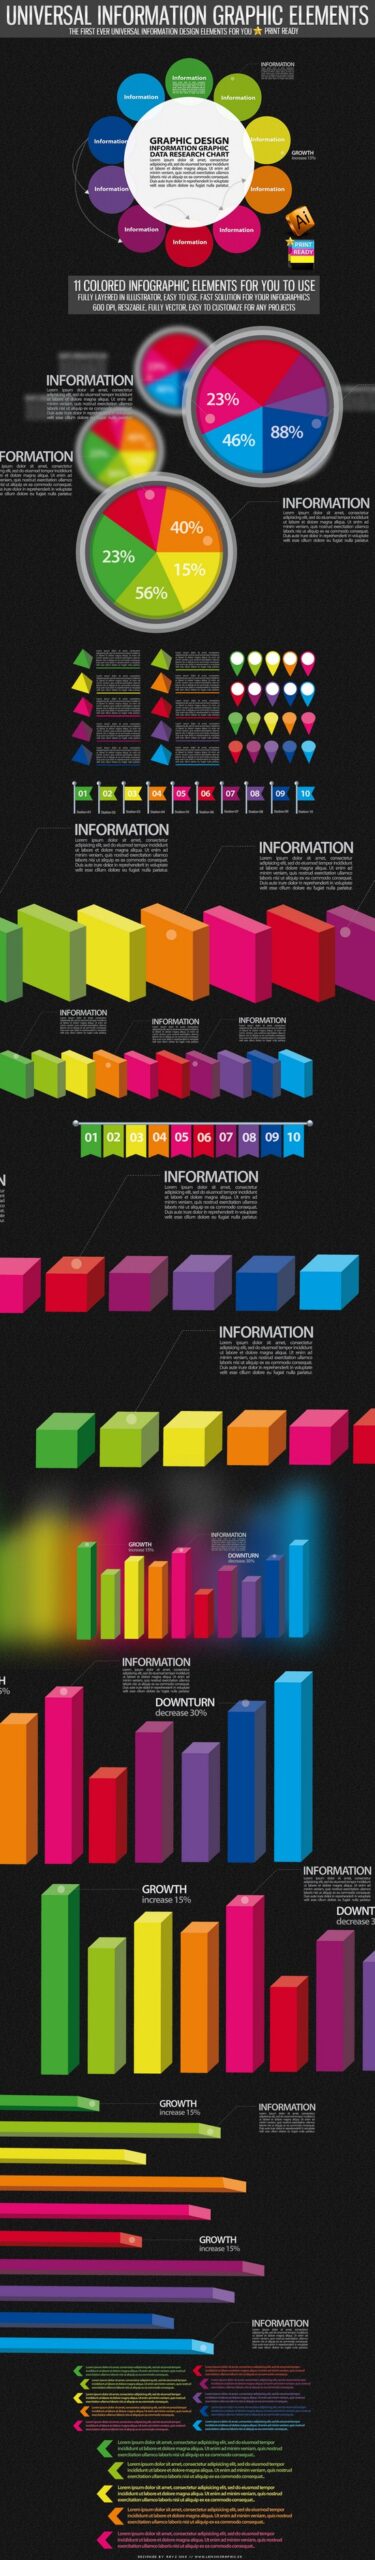 Infographic poster design - QxDesign Studio, Cambridge